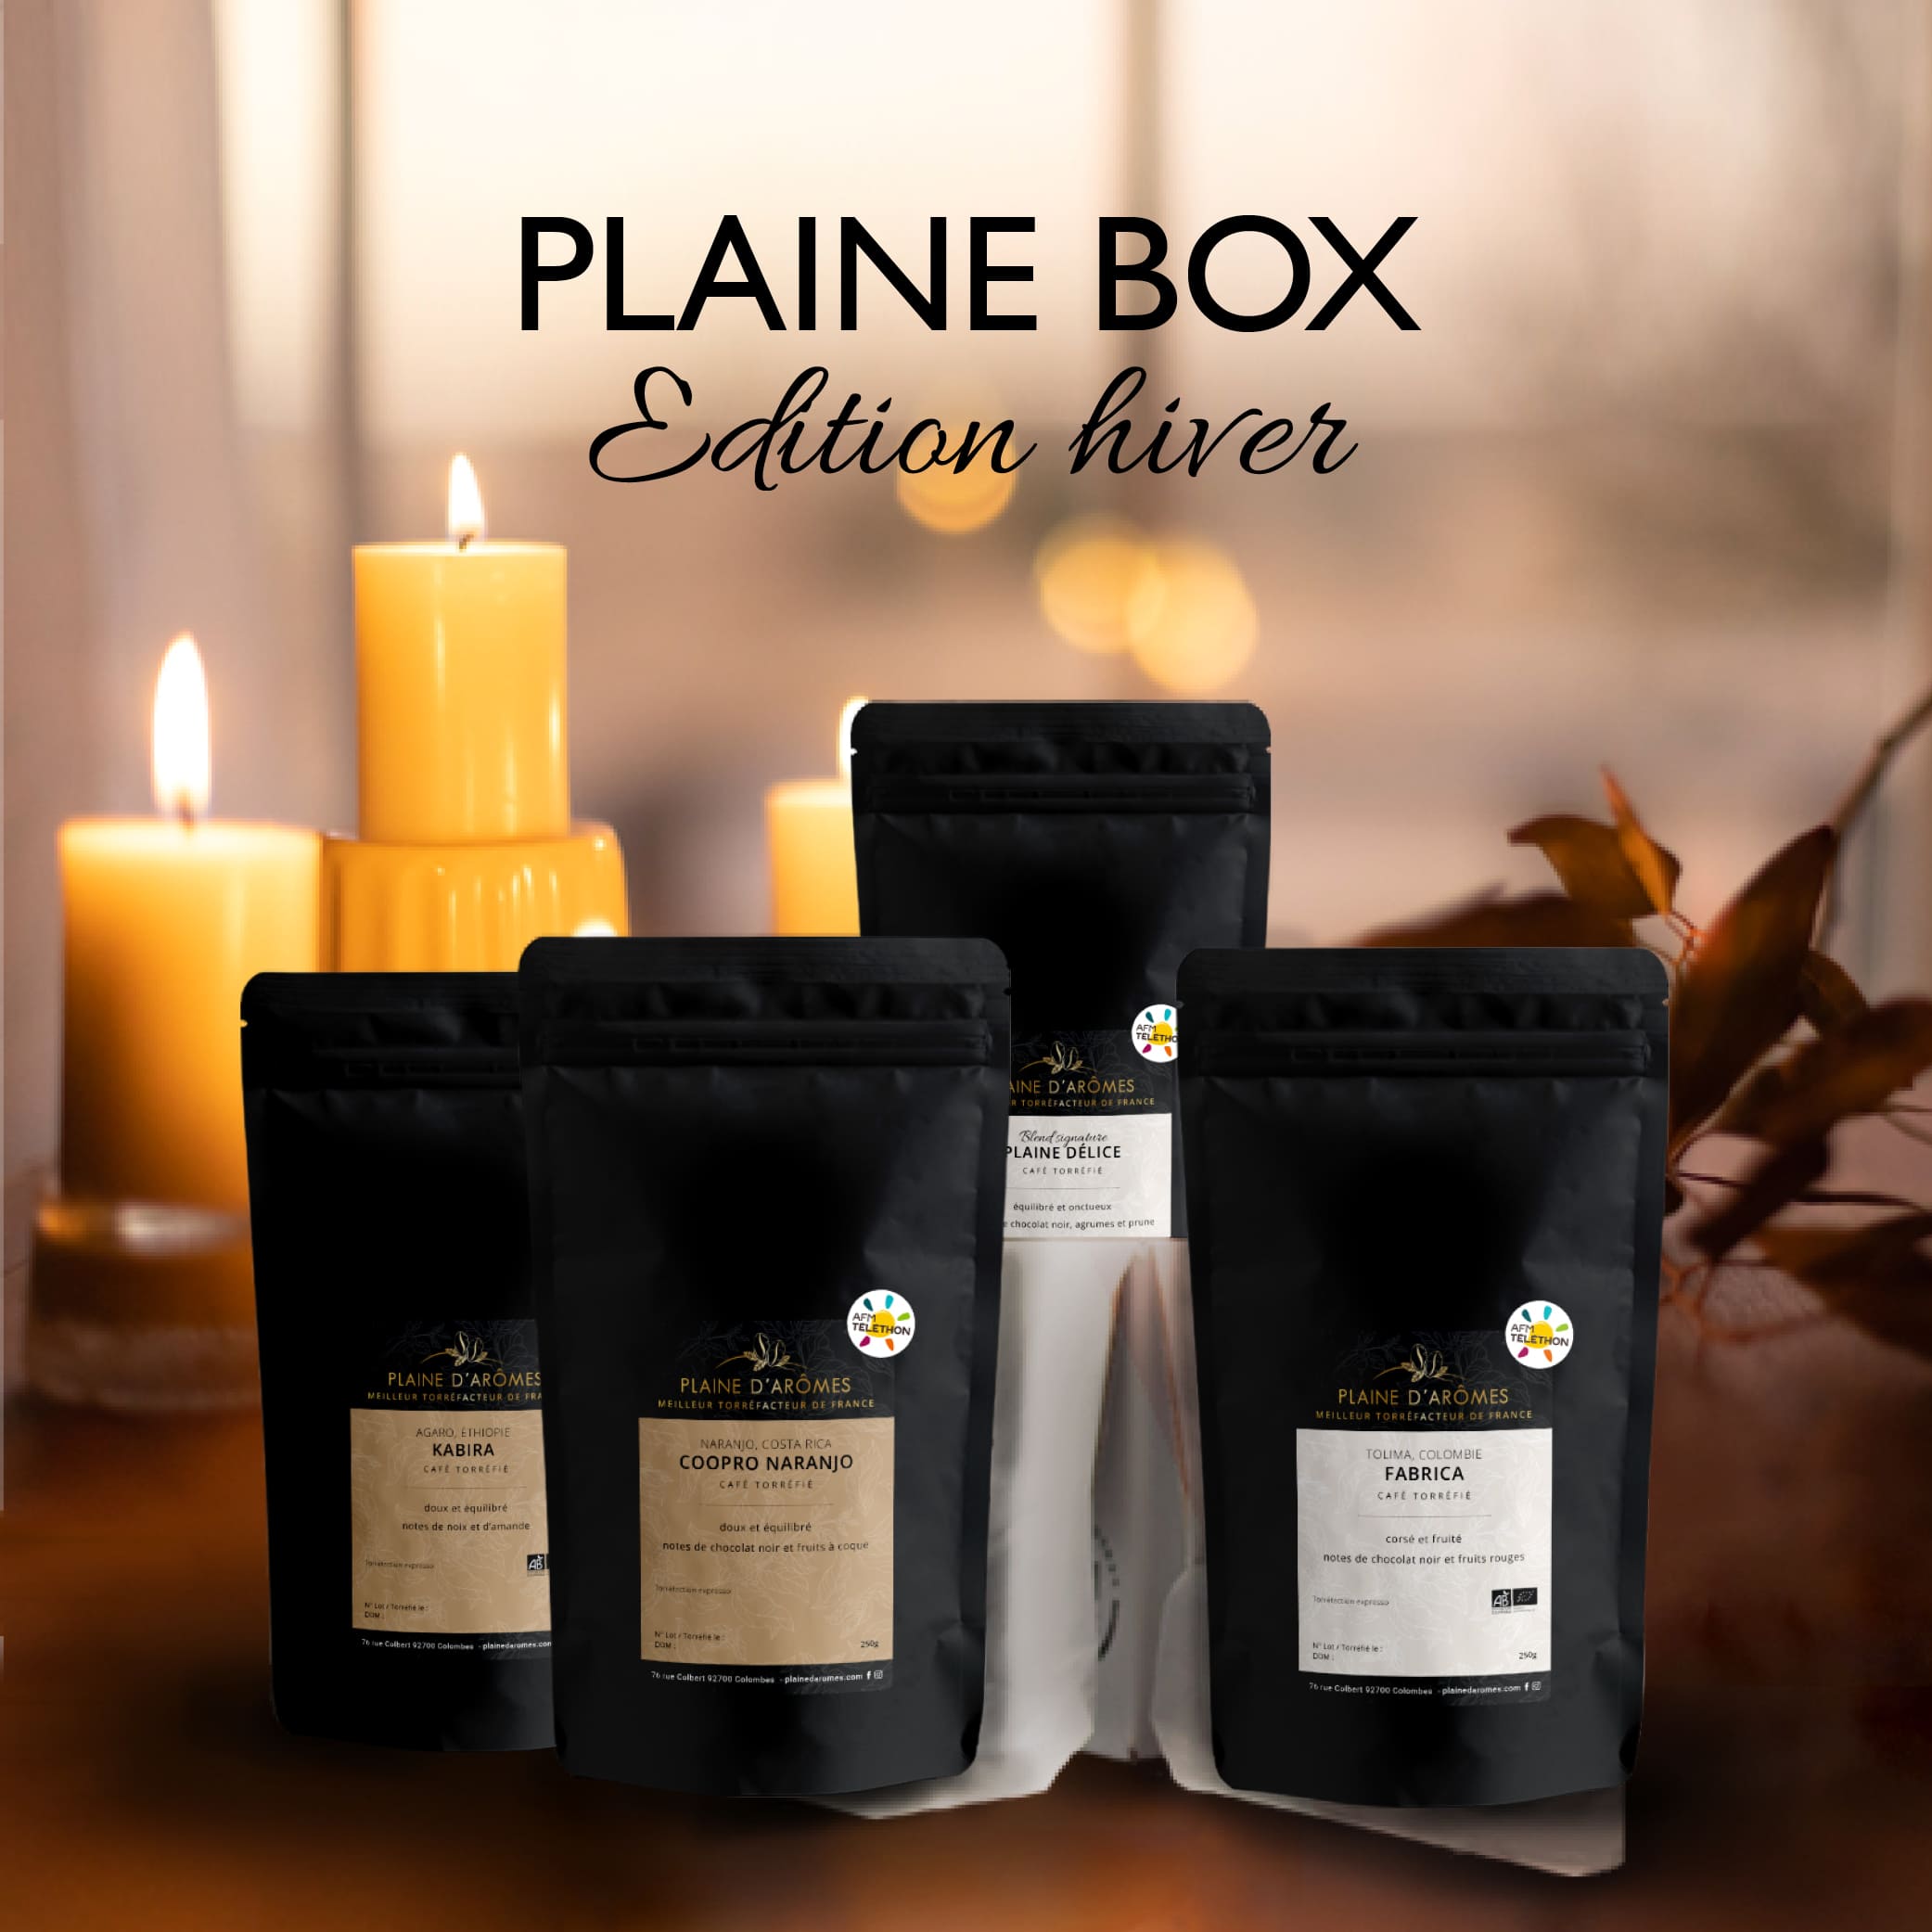 Plaine Box composée de ses 4 paquets de cafés Plaine d'Arômes